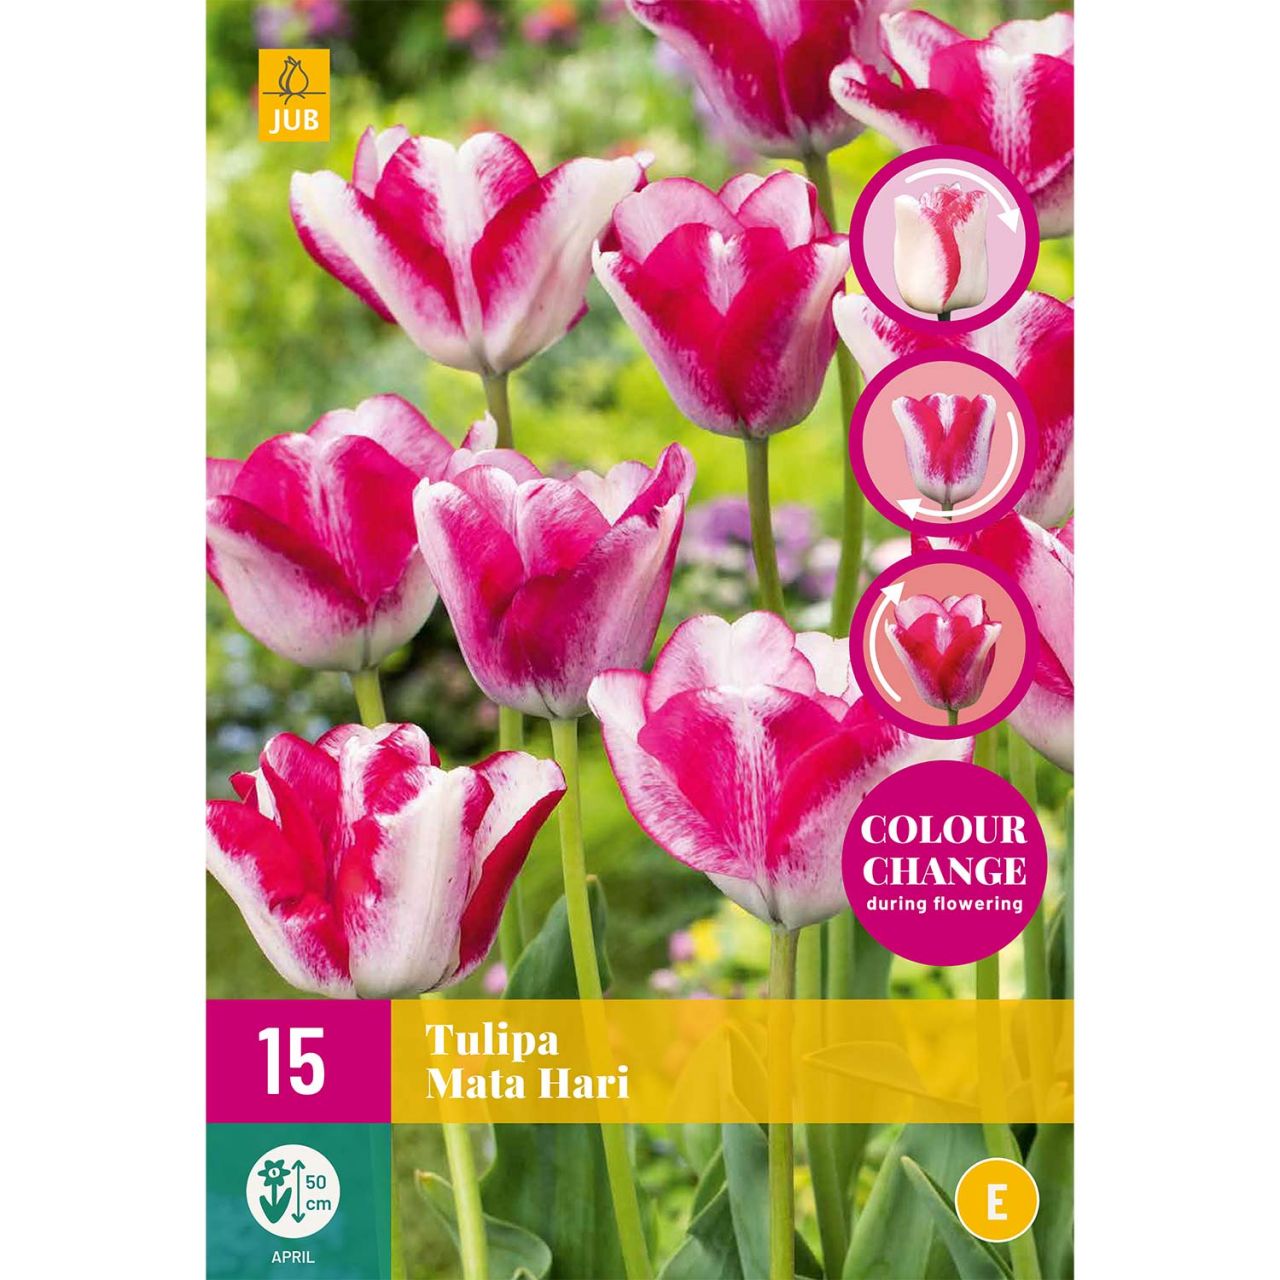 Kategorie <b>Herbst-Blumenzwiebeln </b> - Einfache späte Tulpe 'Mata Hari' - Tulipa 'Mata Hari'